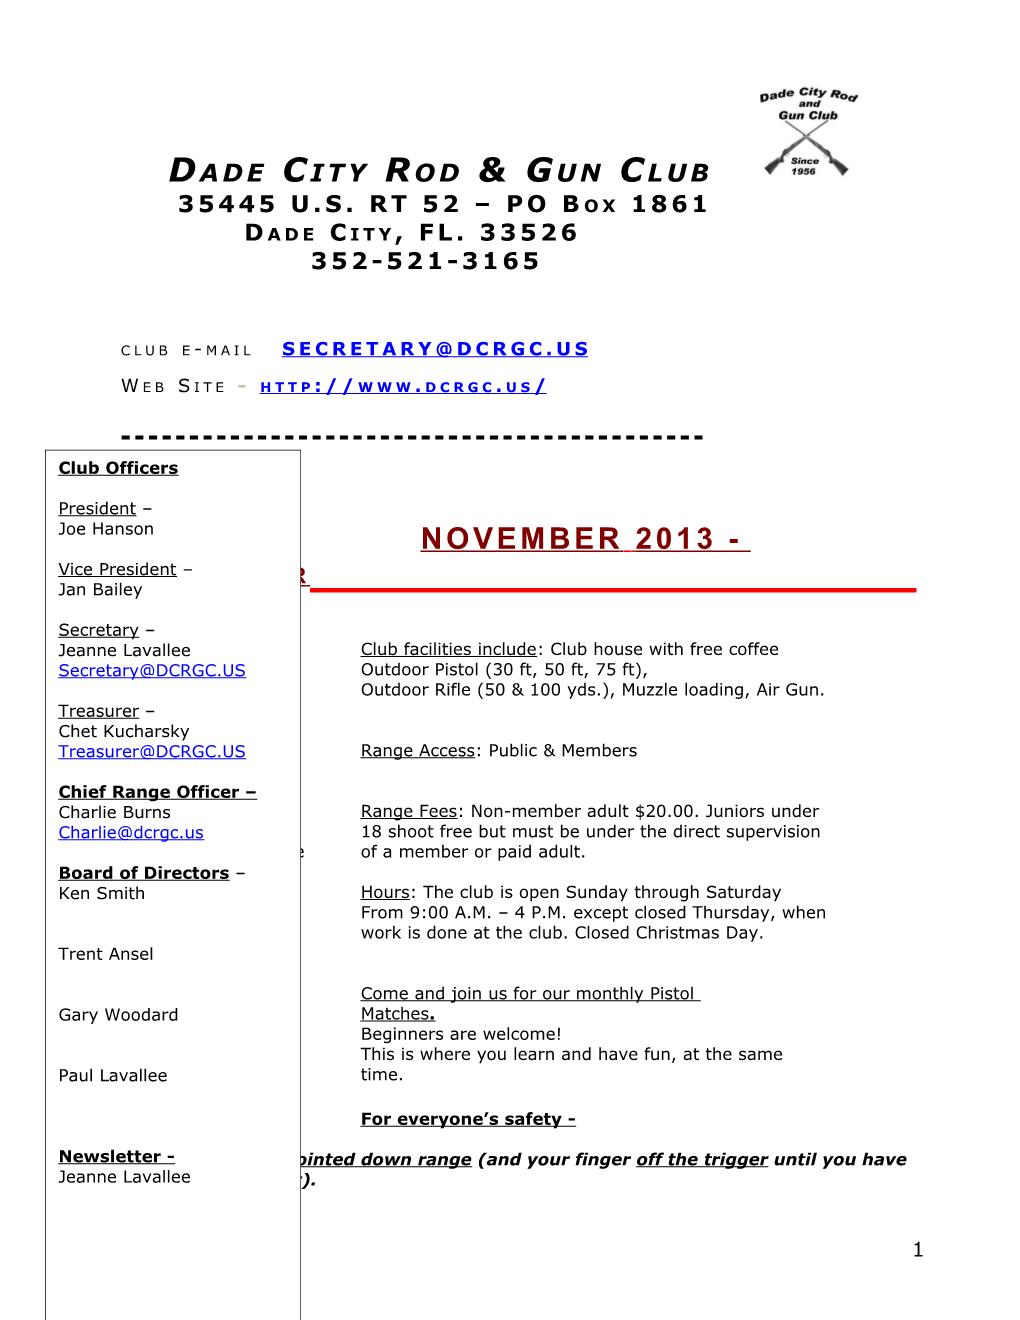 Dade City Rod & Gun Club